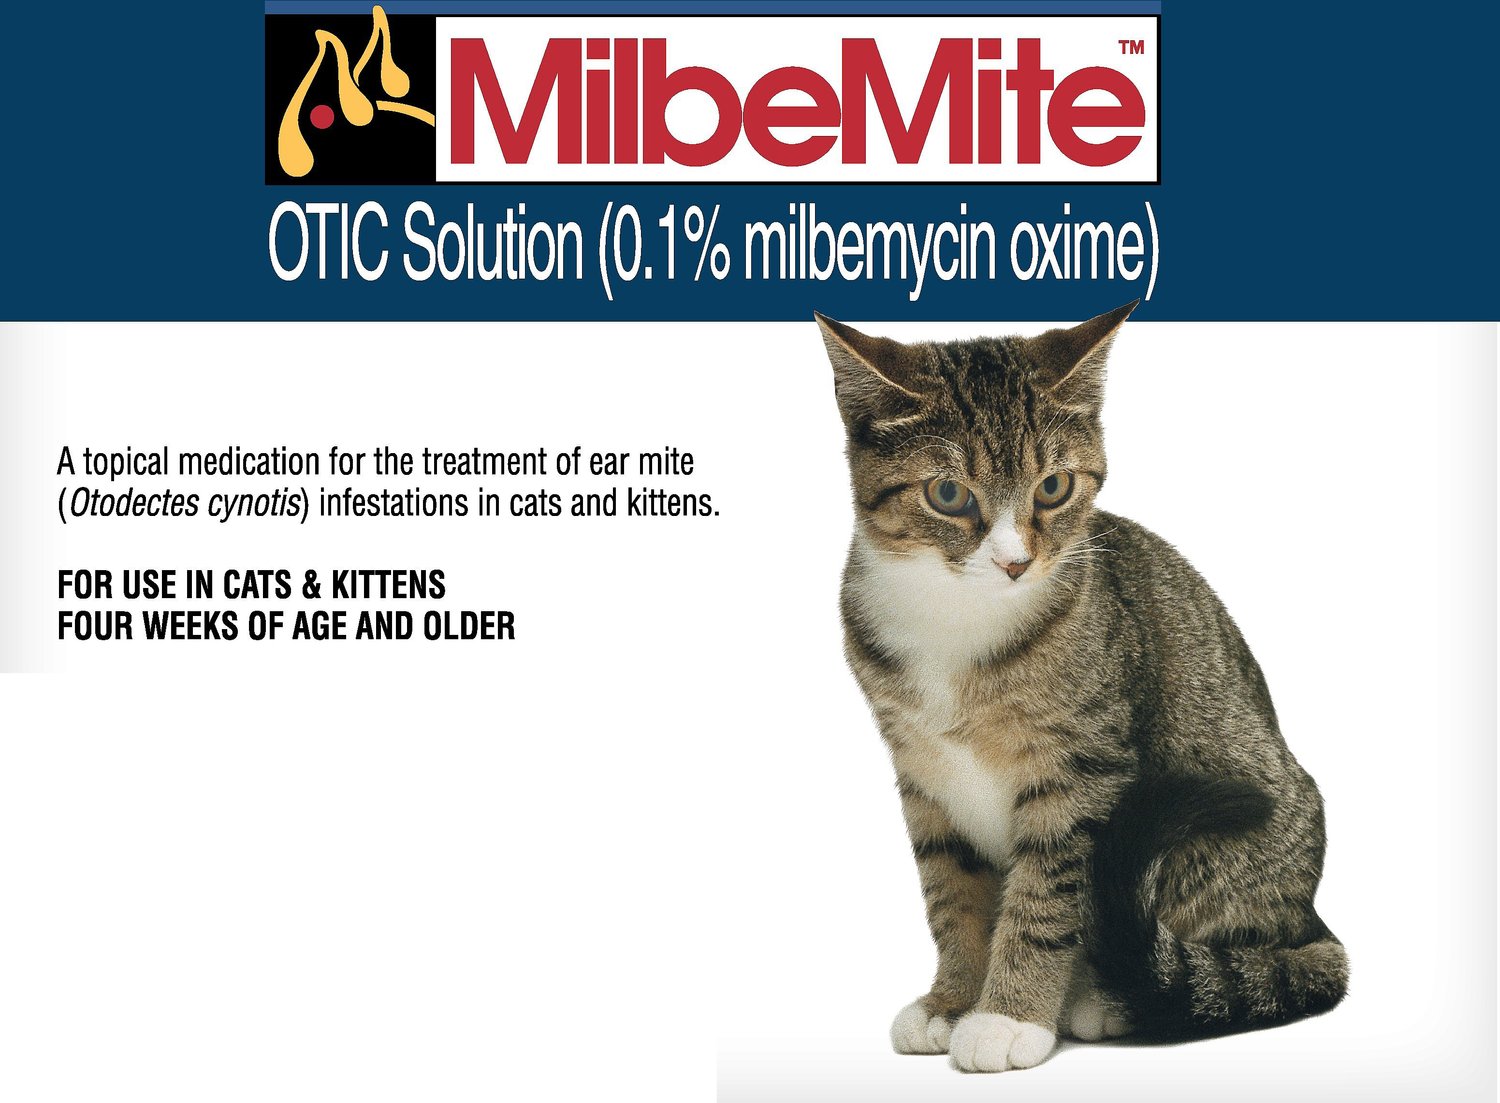 Milbemite Otic Solution for Cats, 2 tube